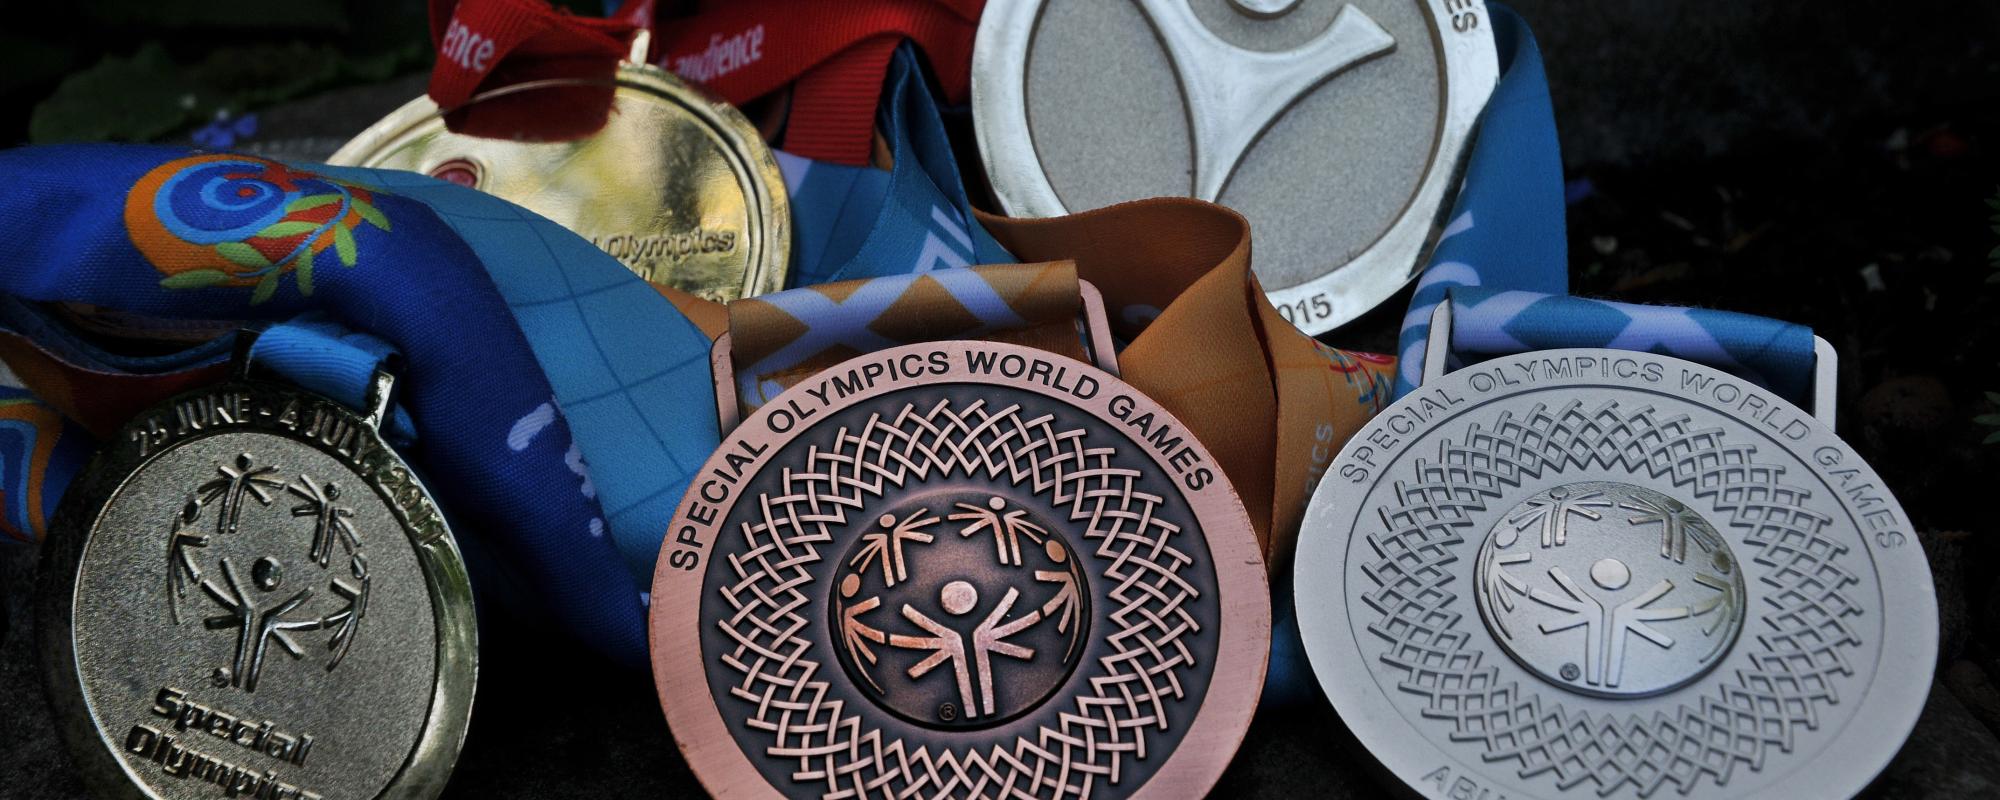 De indrukwekkende reeks medailles van wielrenner Lieven Mels